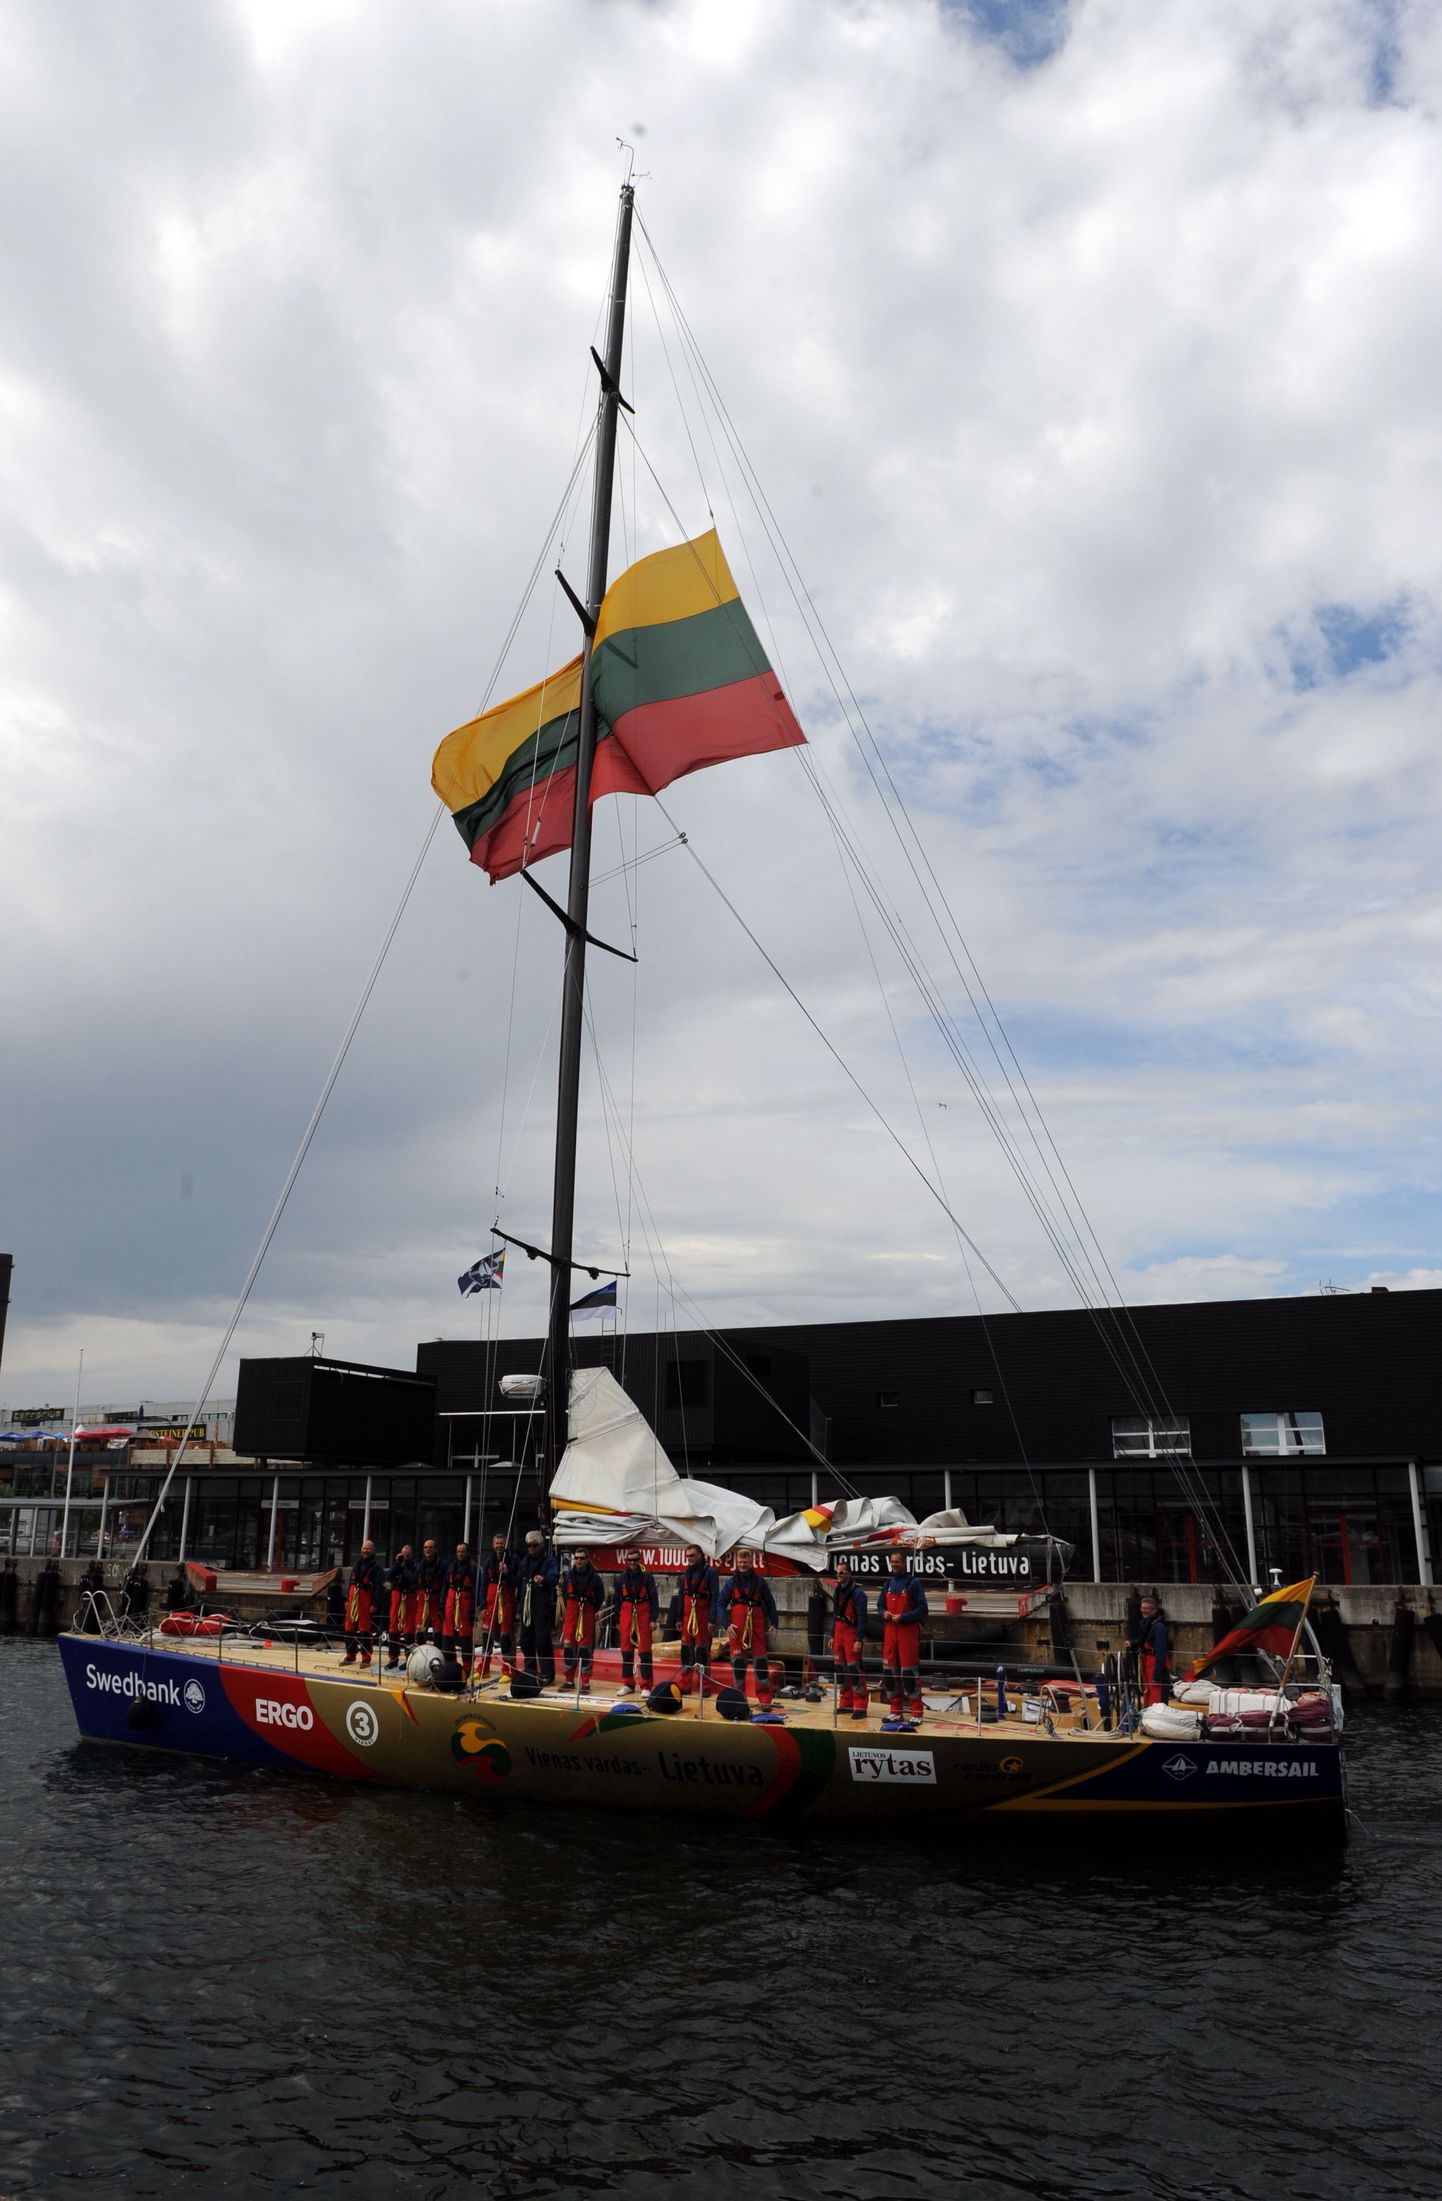 Sadamas tõmmati laeva masti hiiglaslik Leedu lipp.